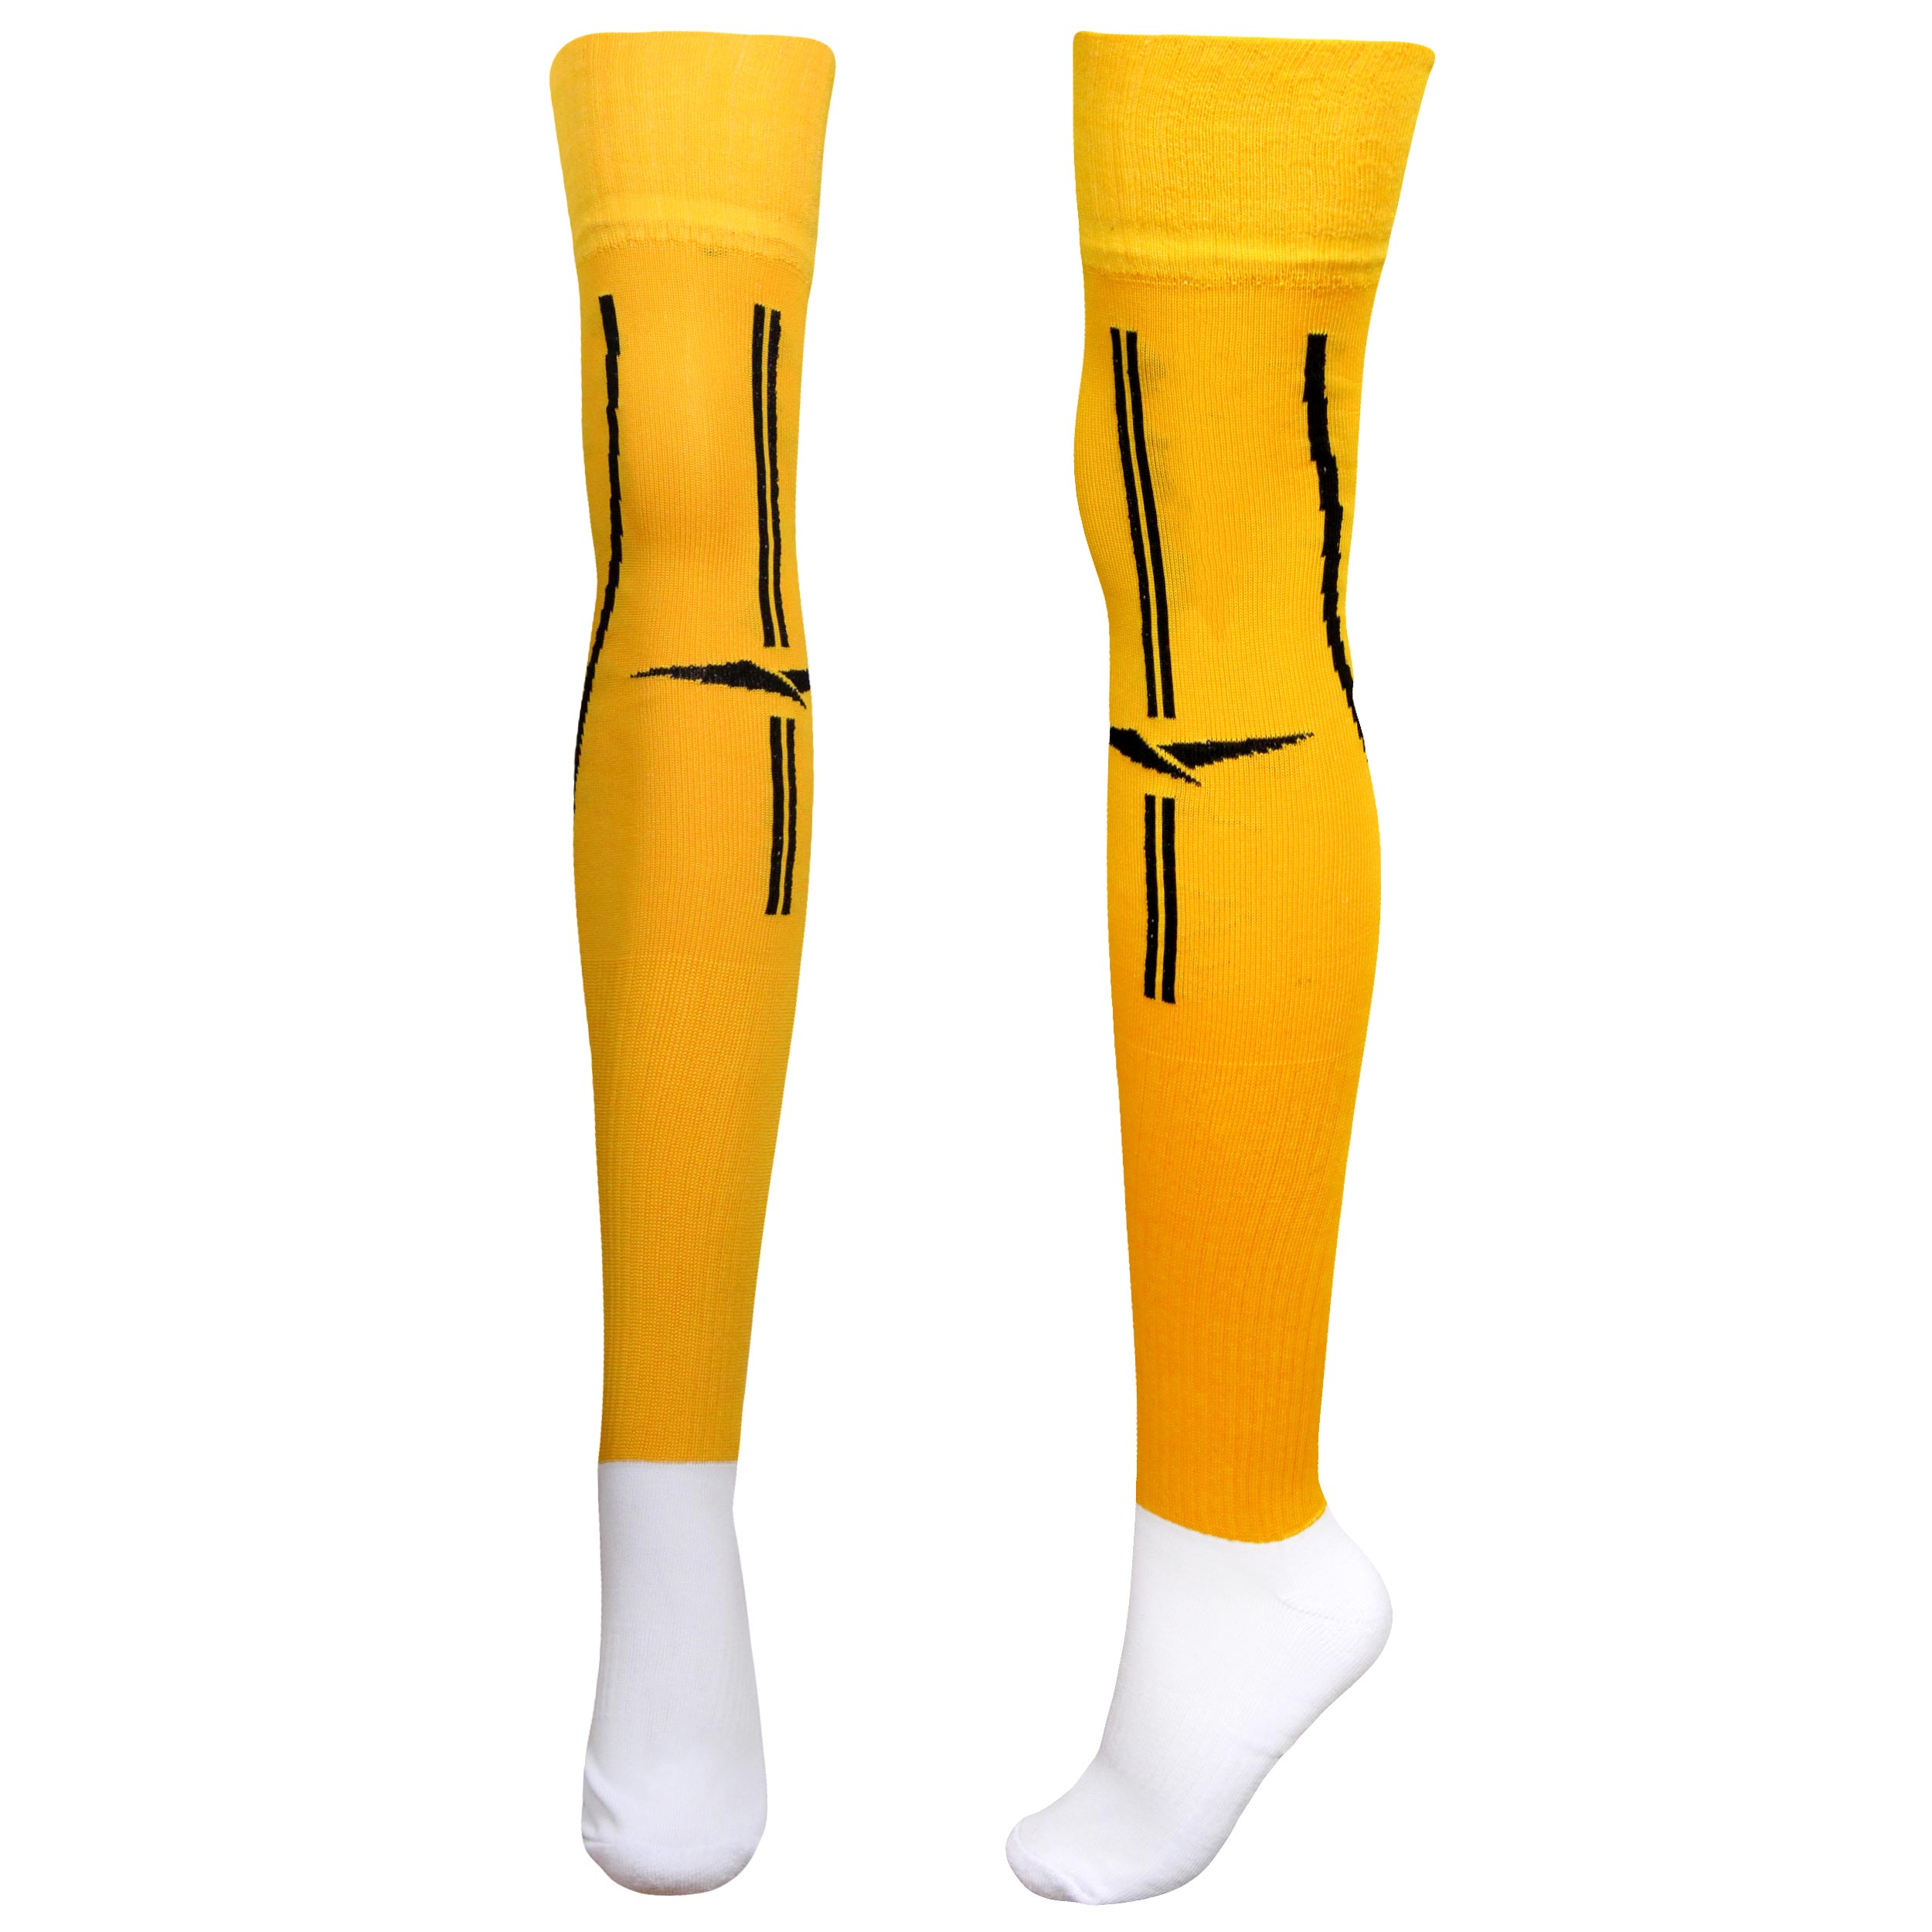 جوراب ورزشی ساق بلند مردانه ماییلدا مدل کف حوله ای کد 4187 رنگ زرد -  - 2